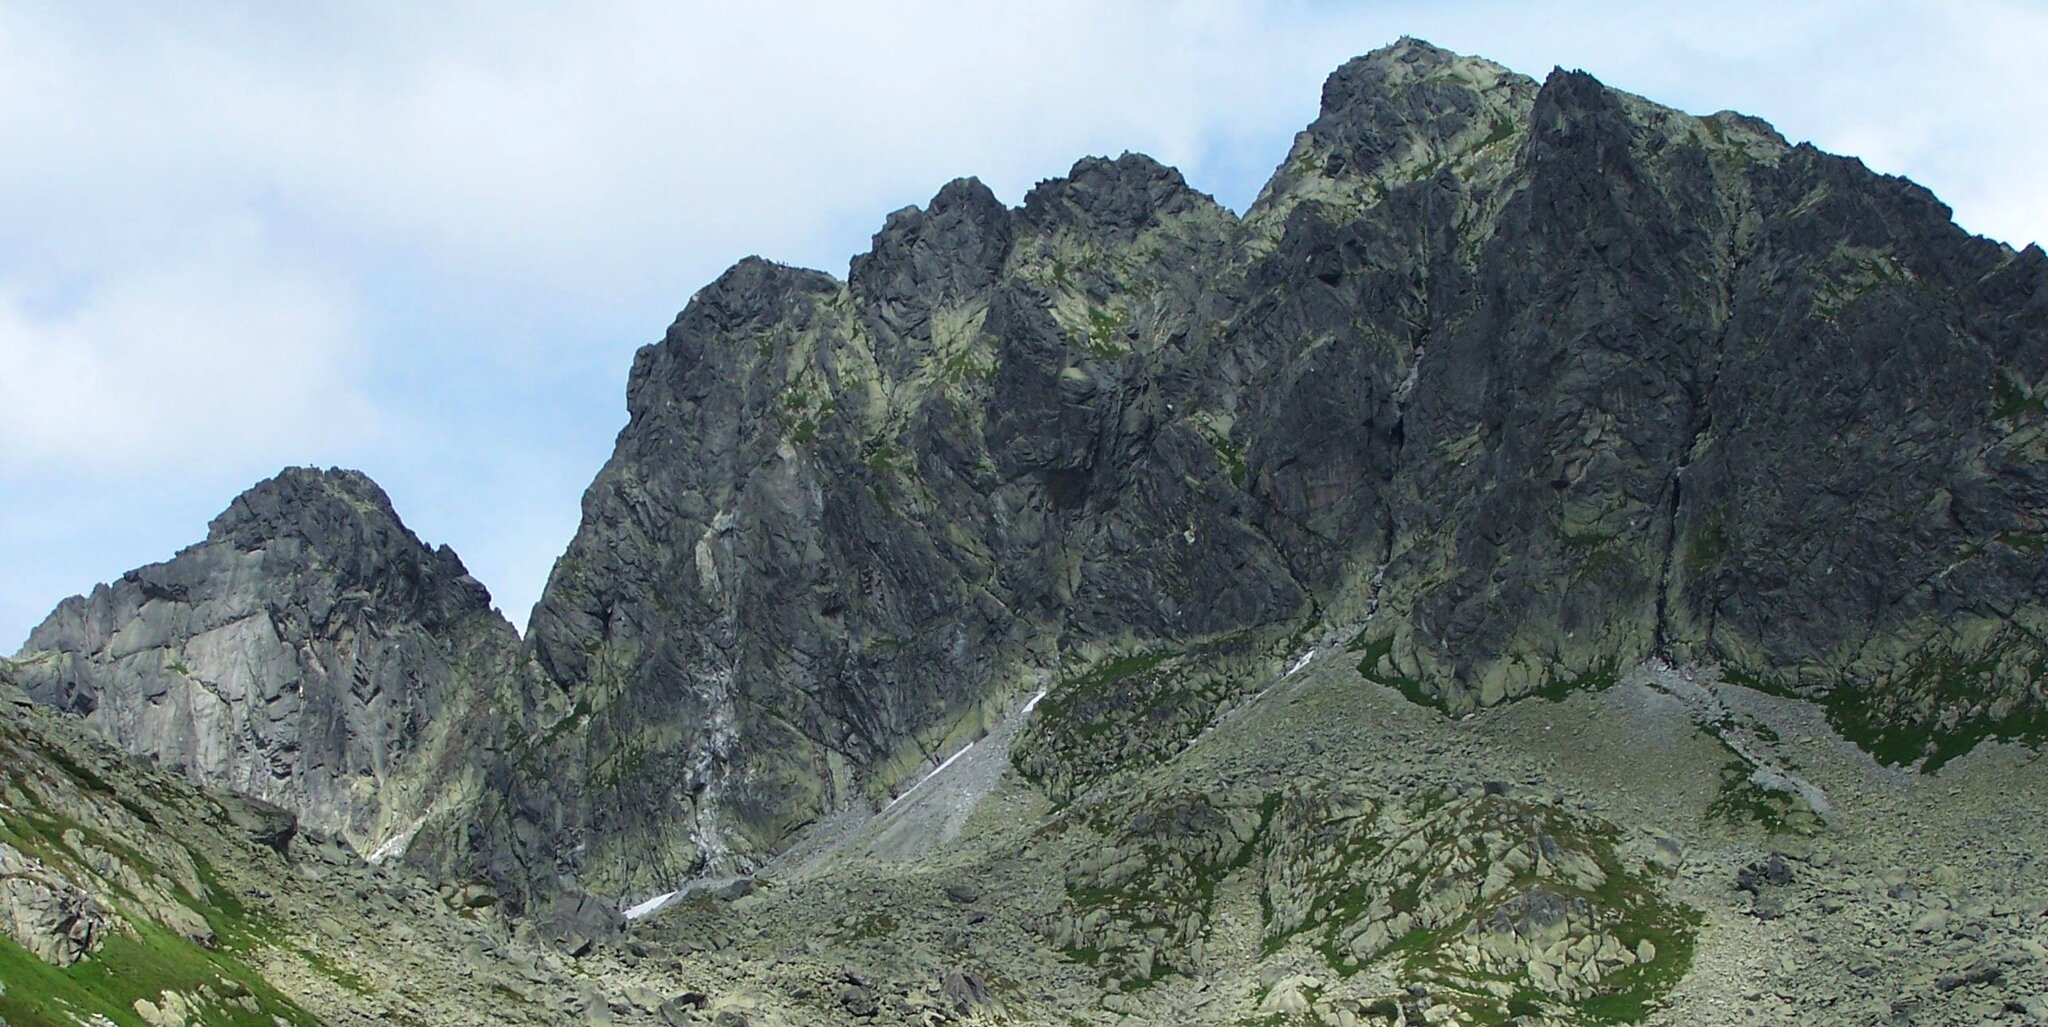 Kozi Wierch w Tatrach, pierwszy szczyt od lewej to Zamarła Turnia Kozi Wierch w Tatrach, pierwszy szczyt od lewej to Zamarła Turnia Źródło: Jerzy Opioła, licencja: CC BY-SA 3.0.